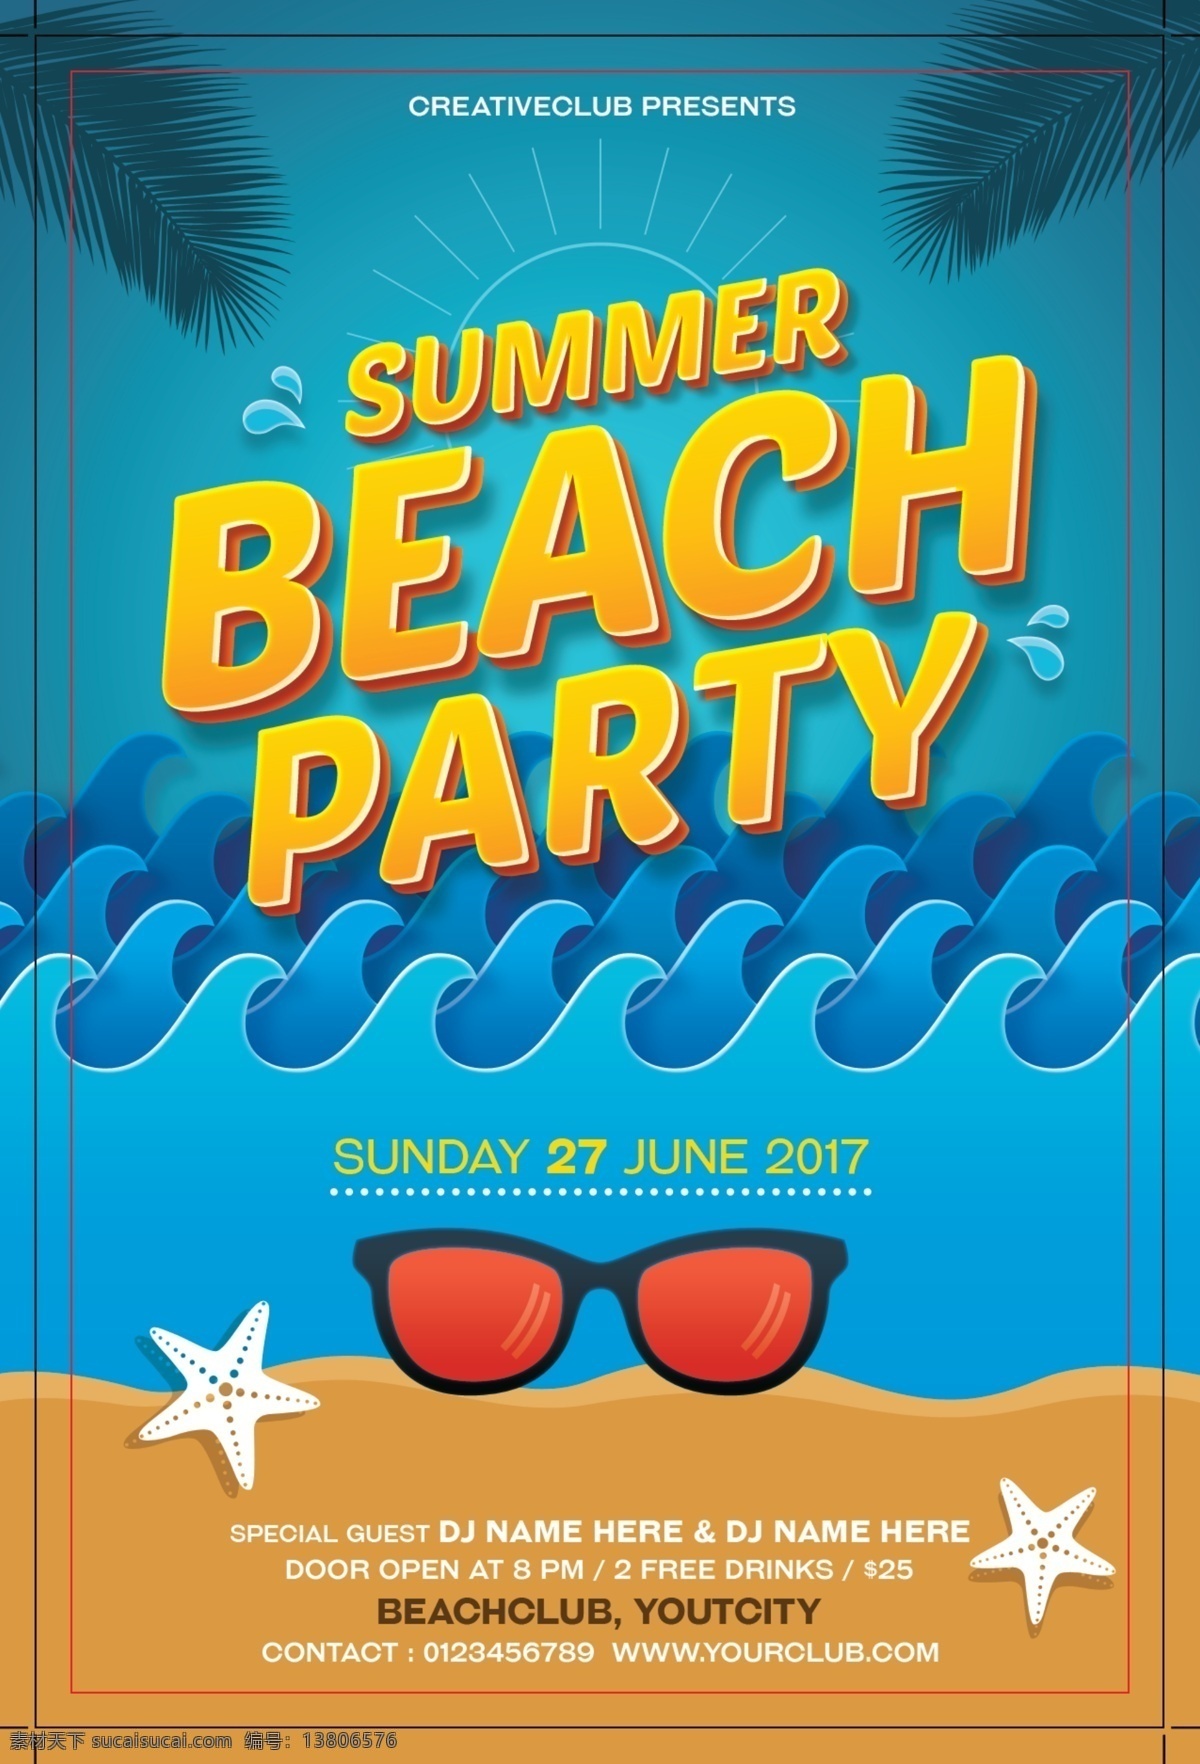 夏季 沙滩 派对 英文 海报 ps 夏季海报 沙滩派对 派对海报 海星 墨镜 热带植物